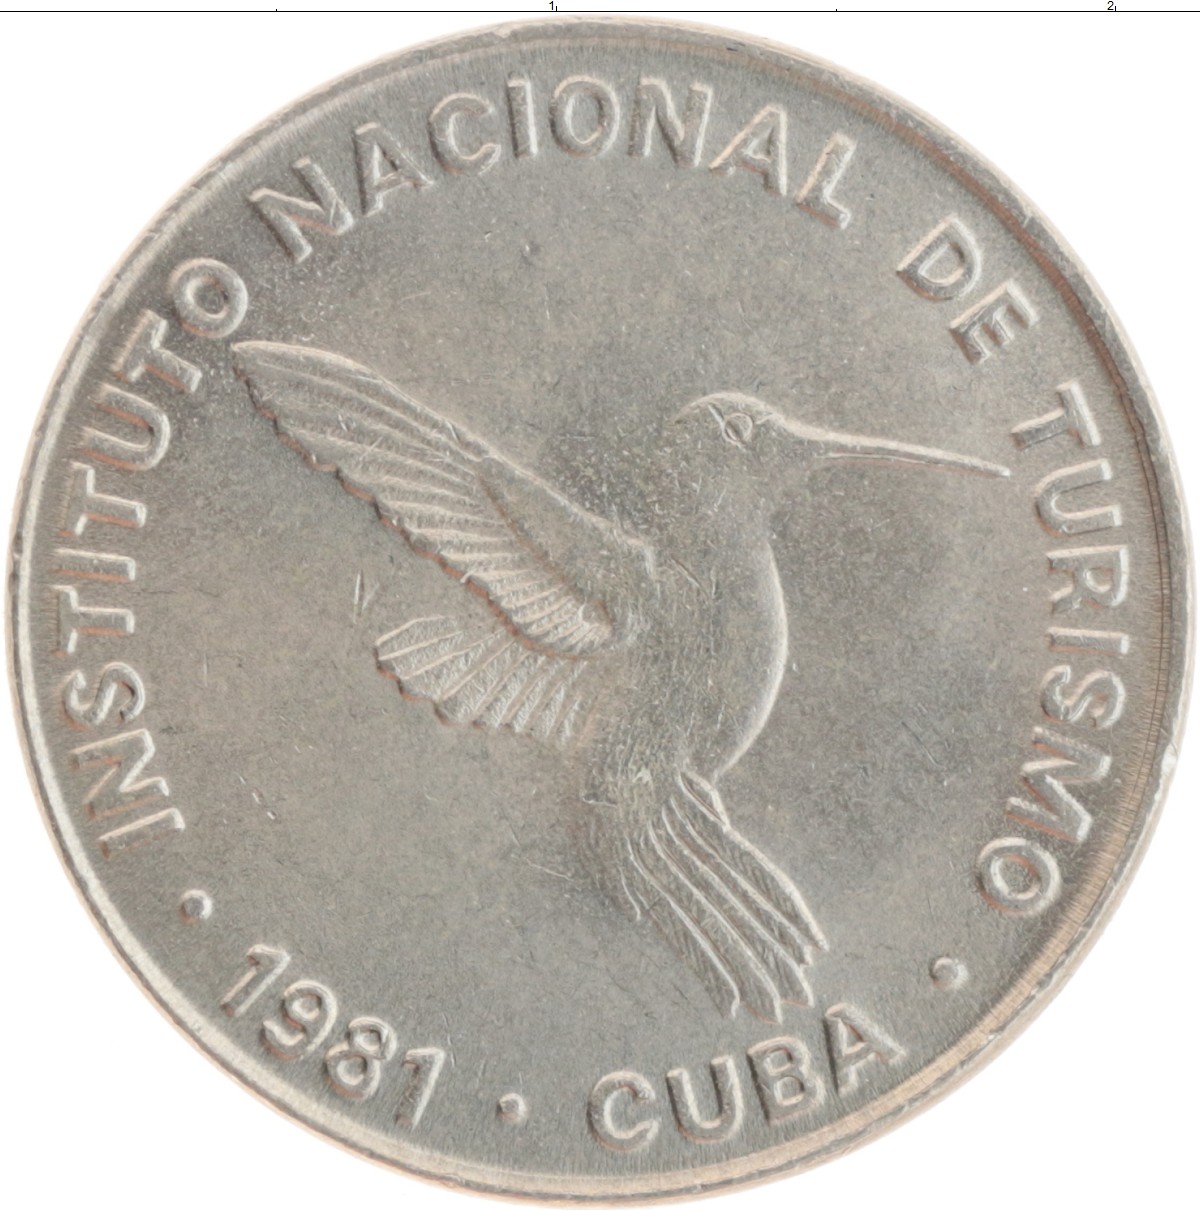 Кубинская монета. Куба 1 сентаво, 1988. Diez centavos Кубинская монета. Интурист Монетка. Монета с десятью странами 1981 года.